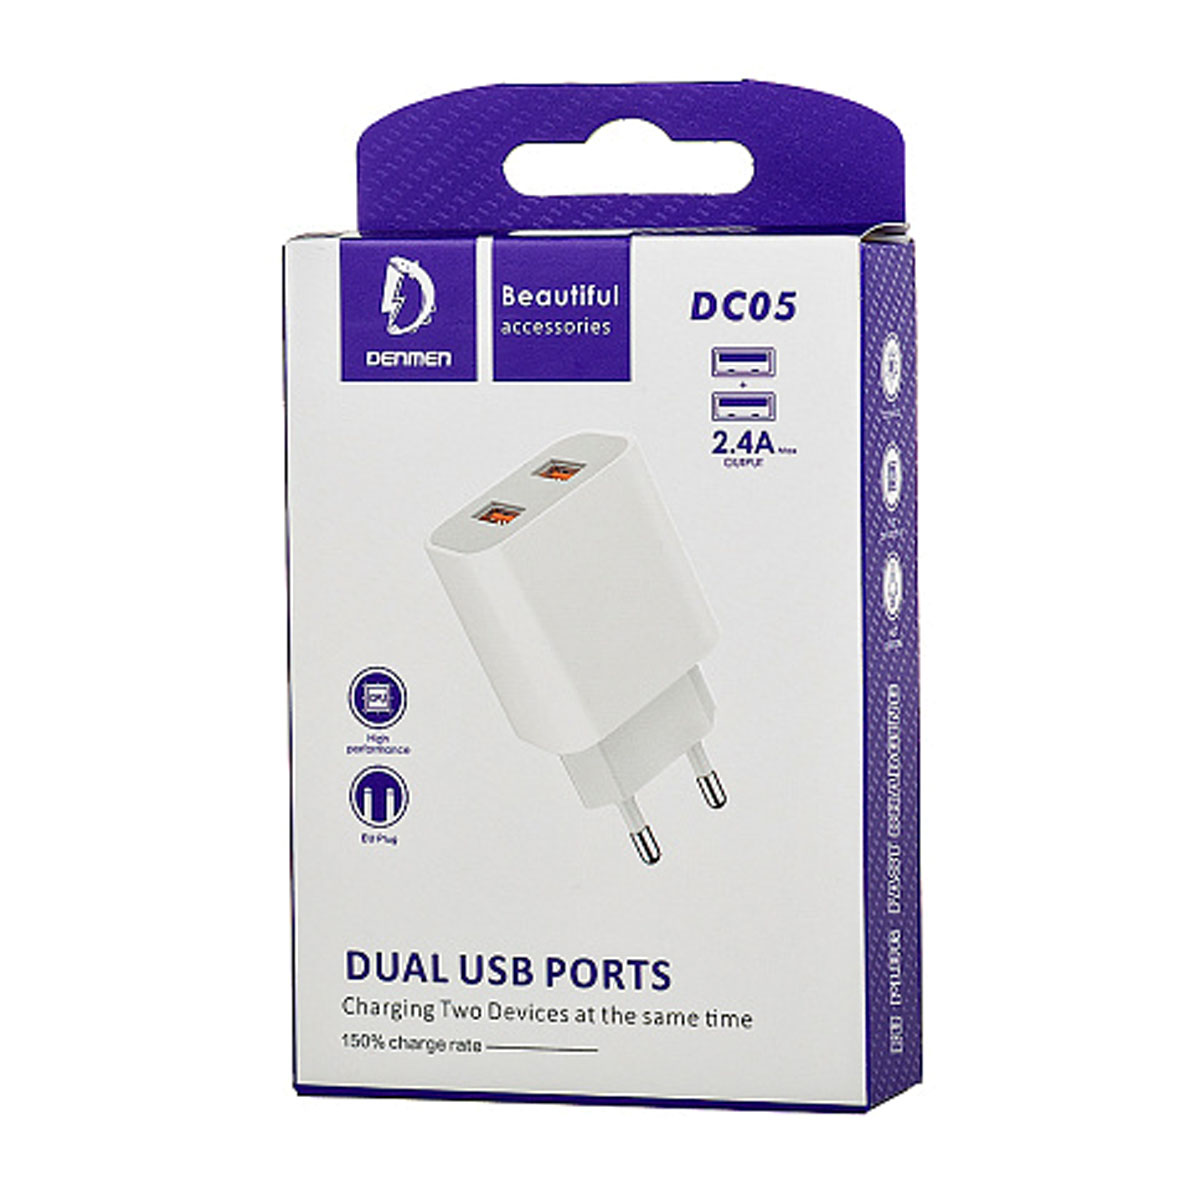 СЗУ (Сетевое зарядное устройство) DENMEN DC05, 2.4A, 2 USB, цвет белый